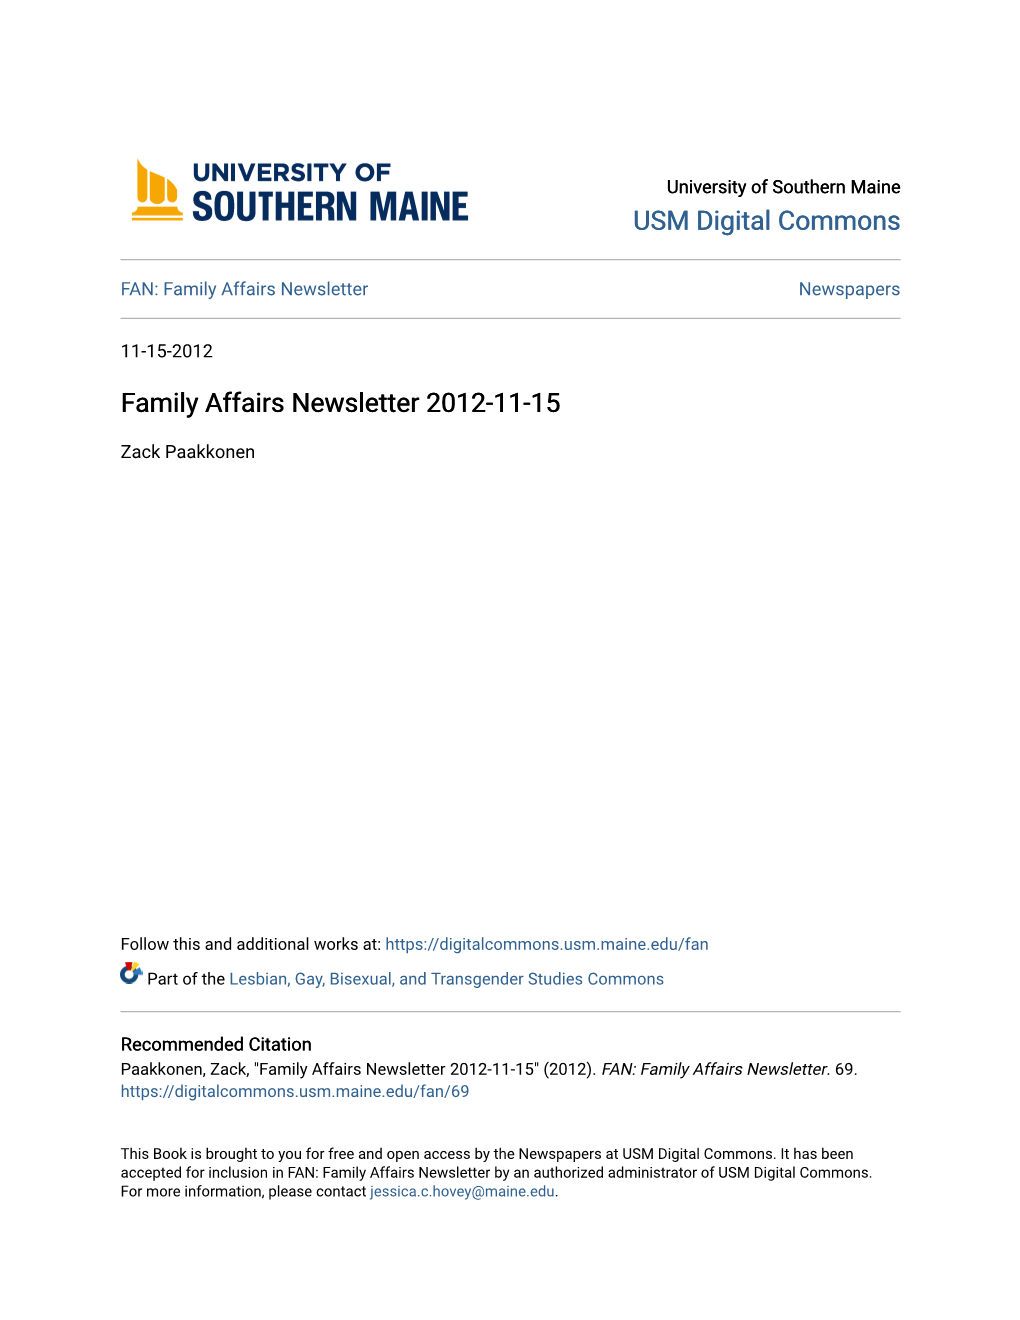 Family Affairs Newsletter 2012-11-15